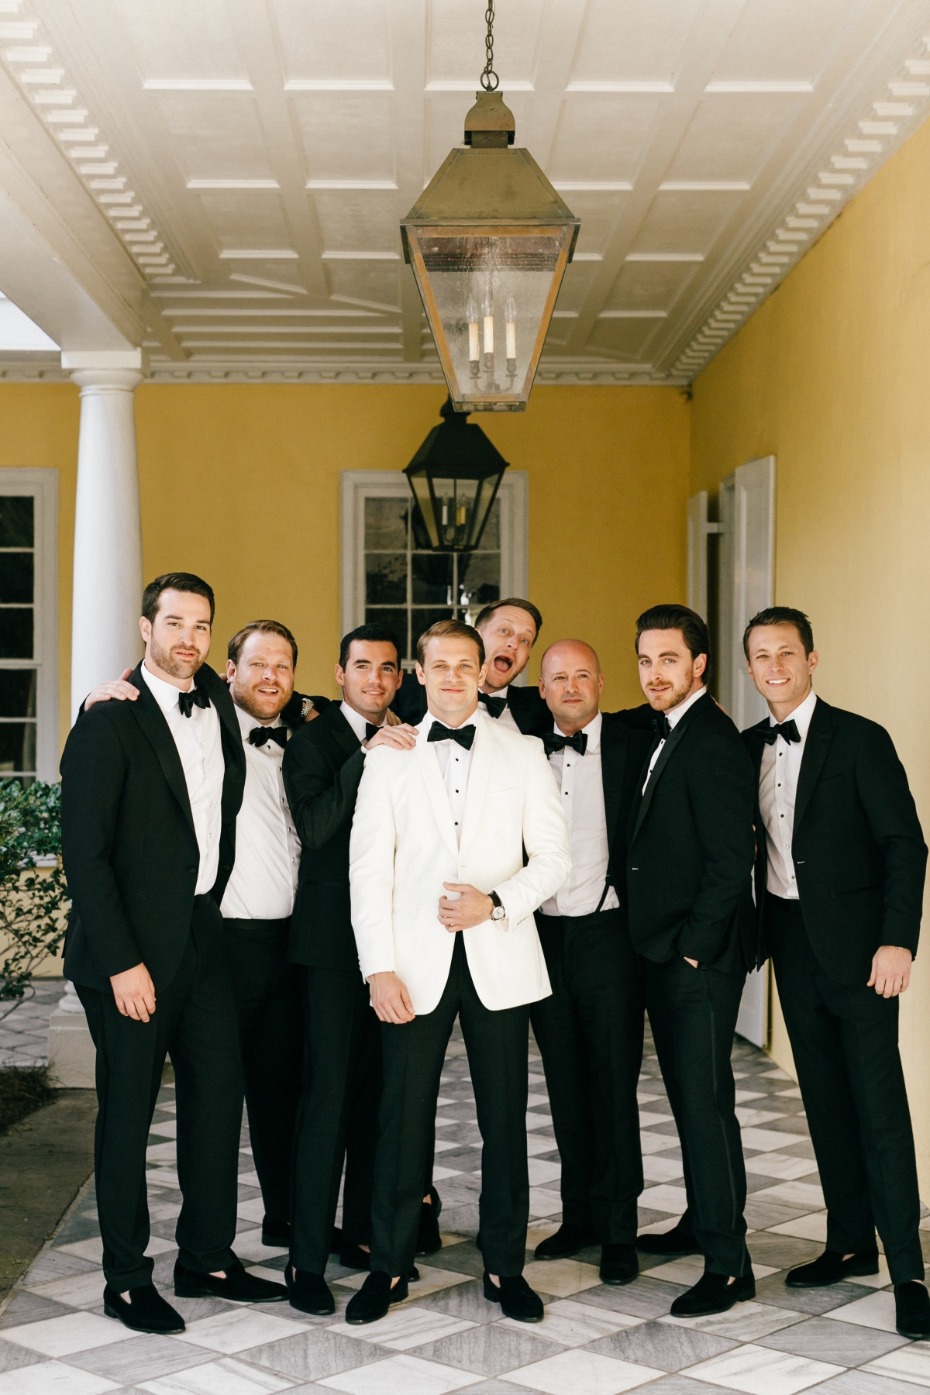 Classic groomsmen look